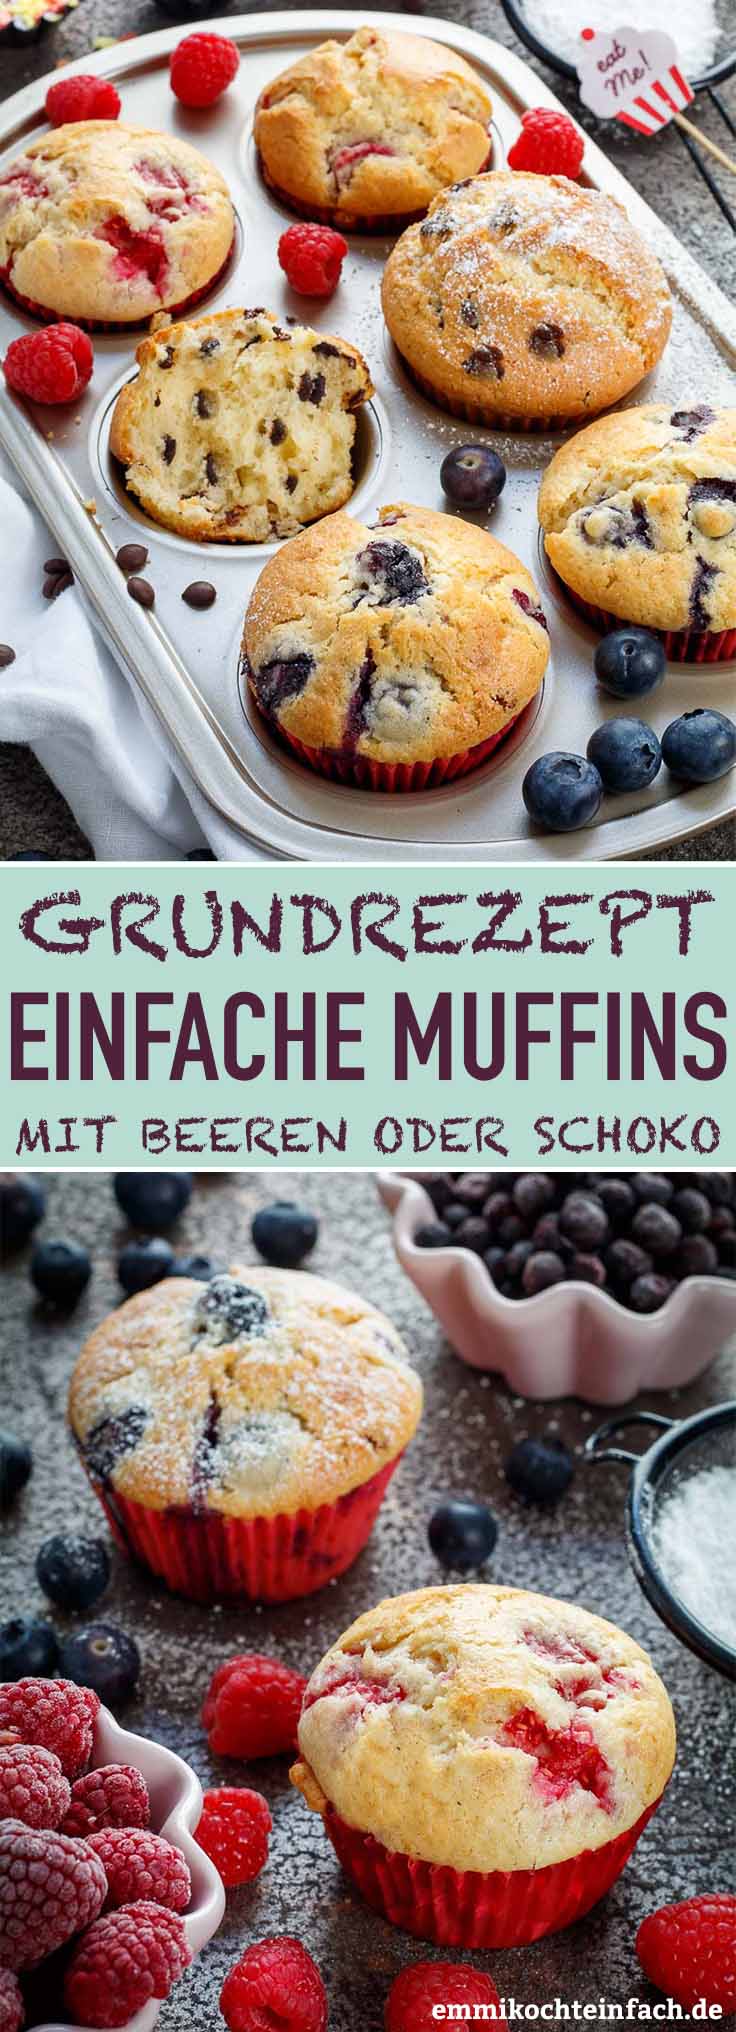 Muffins Grundrezept So Einfach Und Lecker Emmikochteinfach